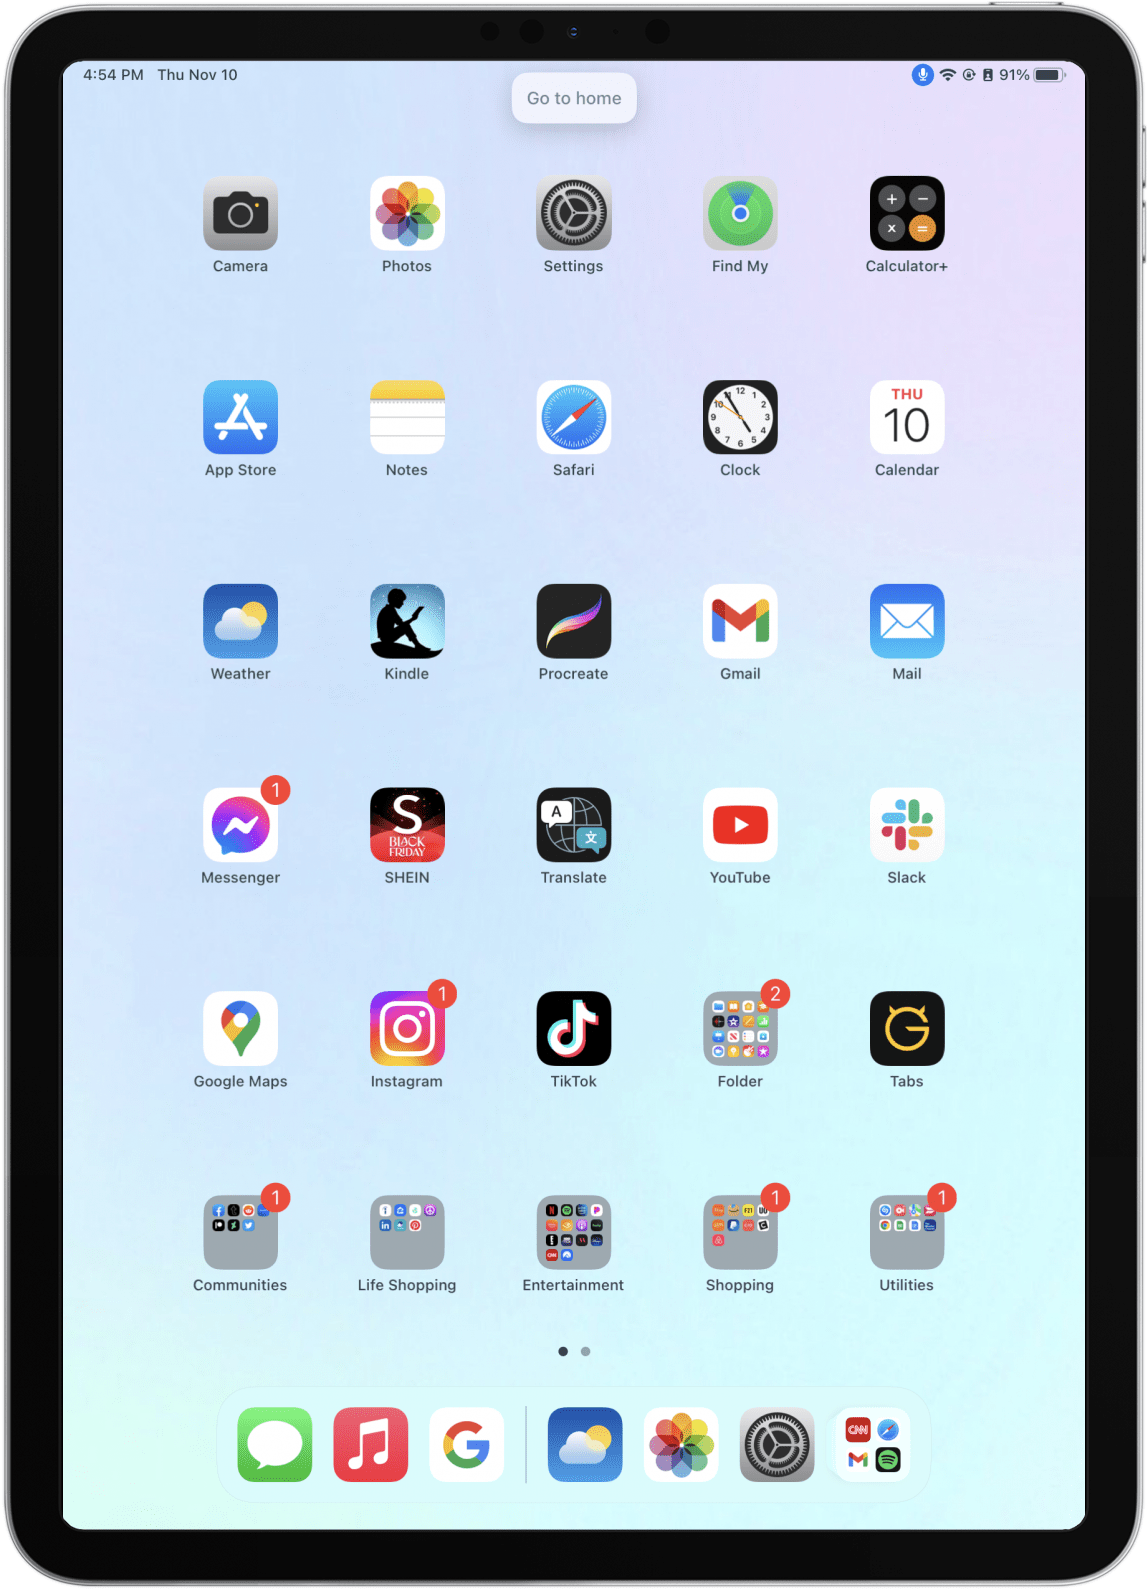 Sobald Sie die Sprachsteuerung auf Ihrem iPad aktiviert haben, sagen Sie "Zur Startseite" um zum Startbildschirm zurückzukehren.